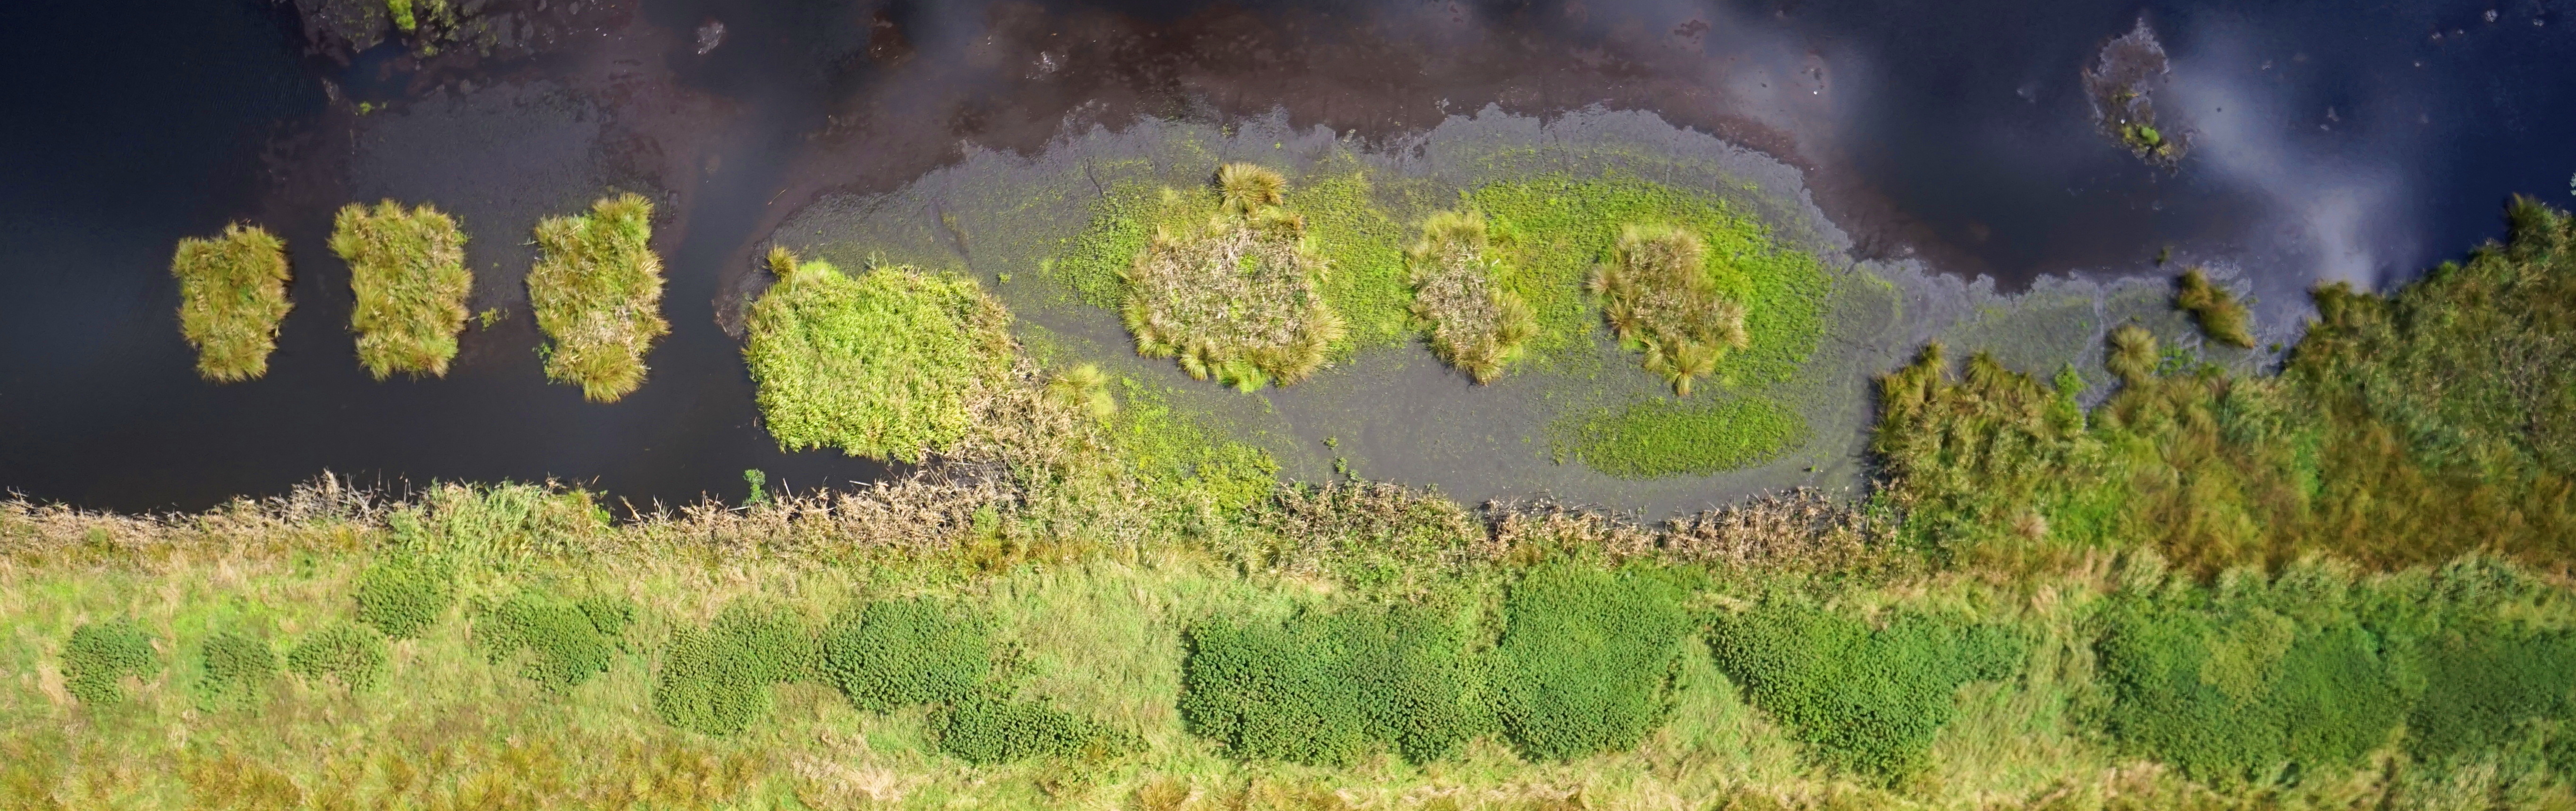 Drohnenaufname eines Moores. Unten im Bild grüne Vegetation, darüber dunkles Wasser.